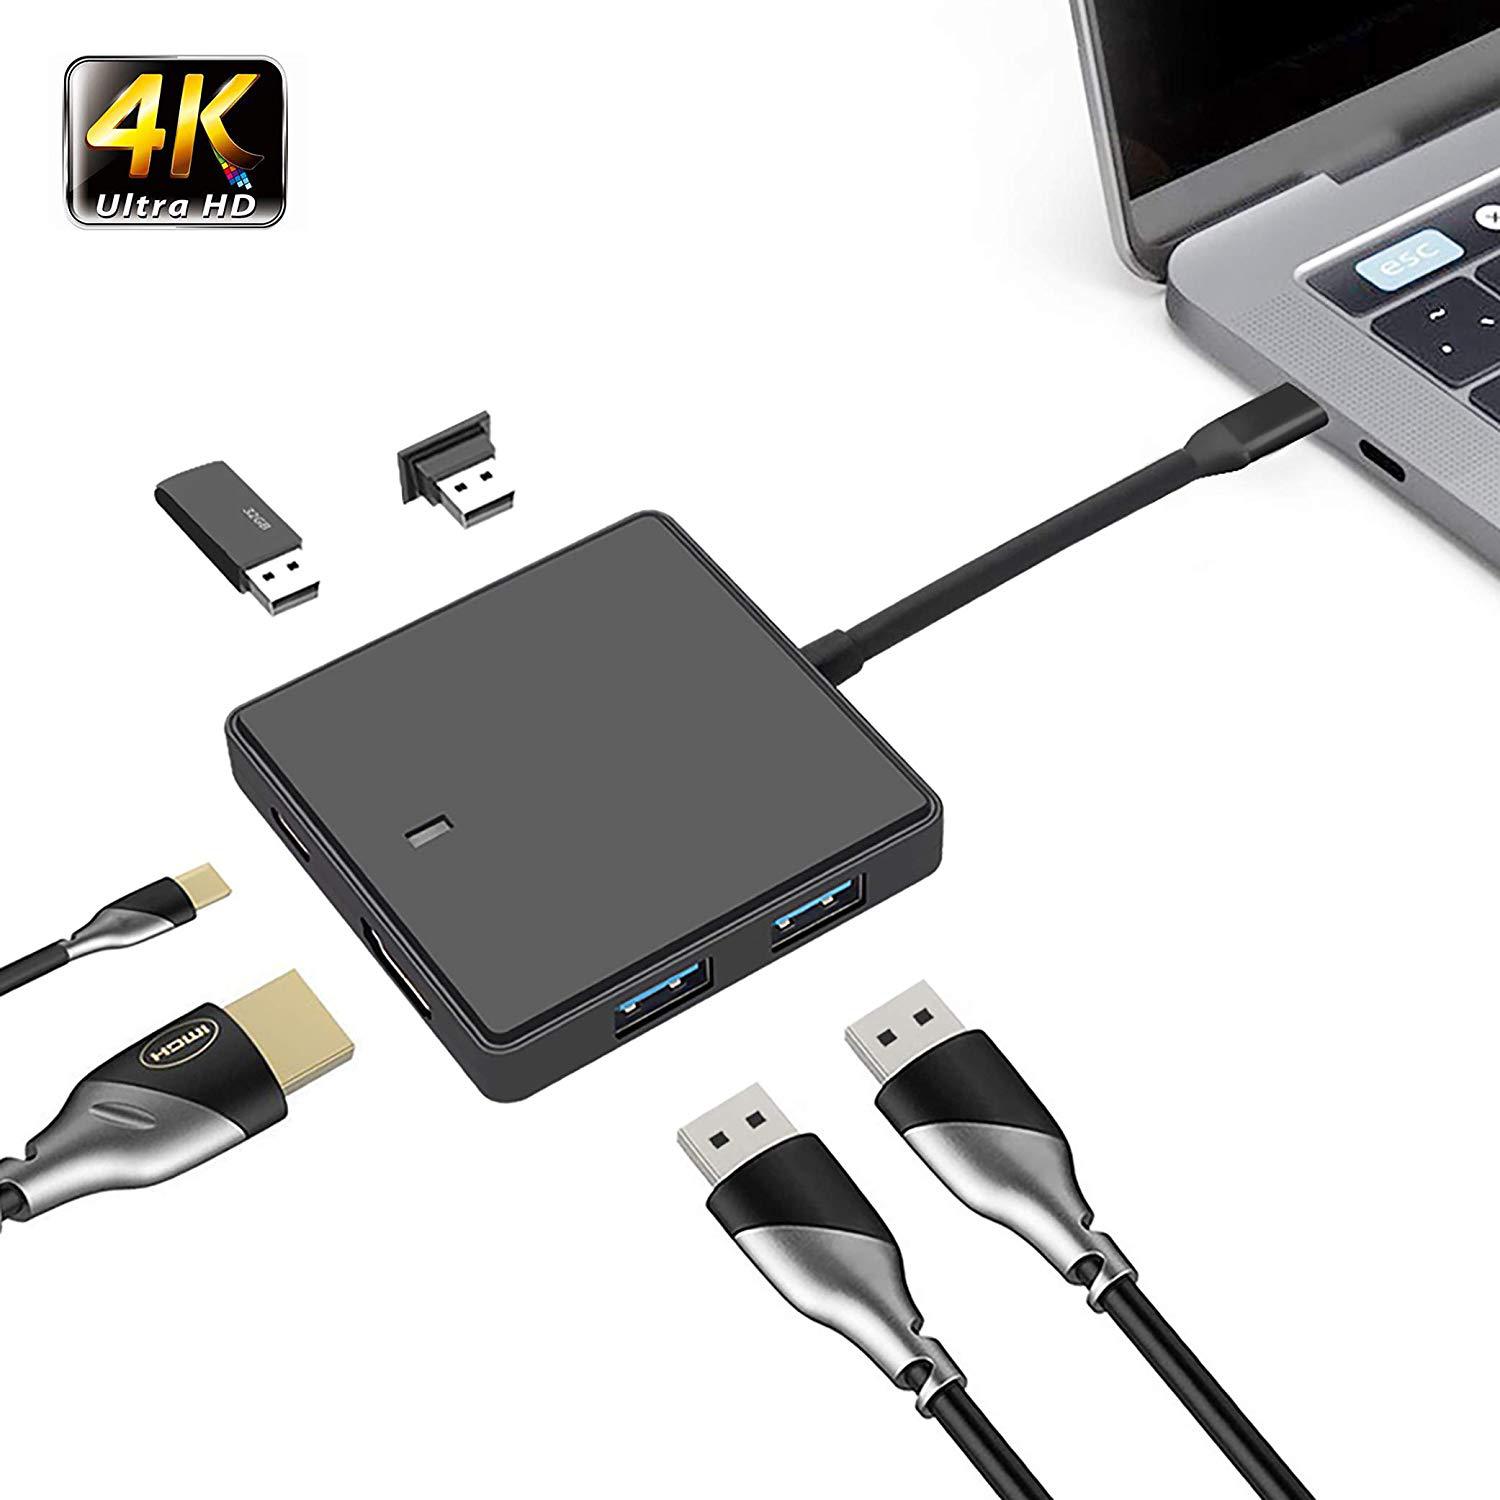 USB-C till HDMI USB-hubb med 4xUSB3.0 och USB3.1, svart